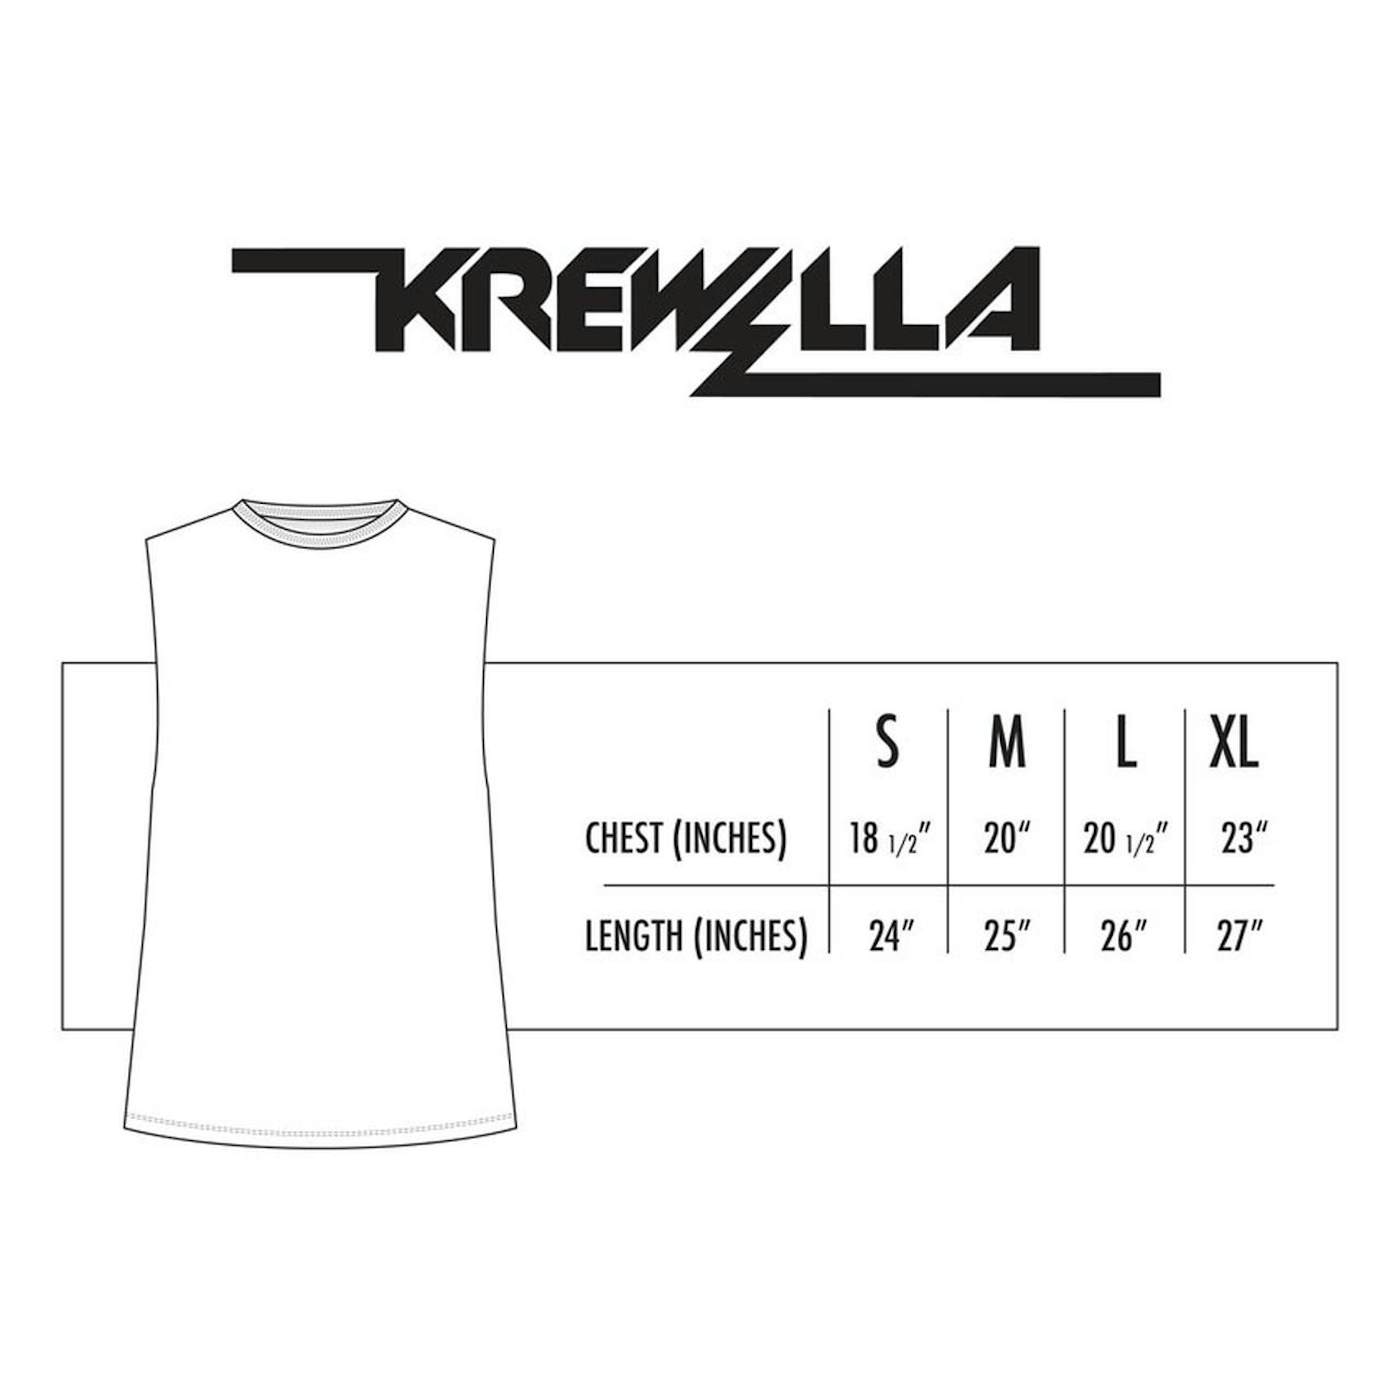 KREWELLA TEE // GASMASK SLEEVELESS